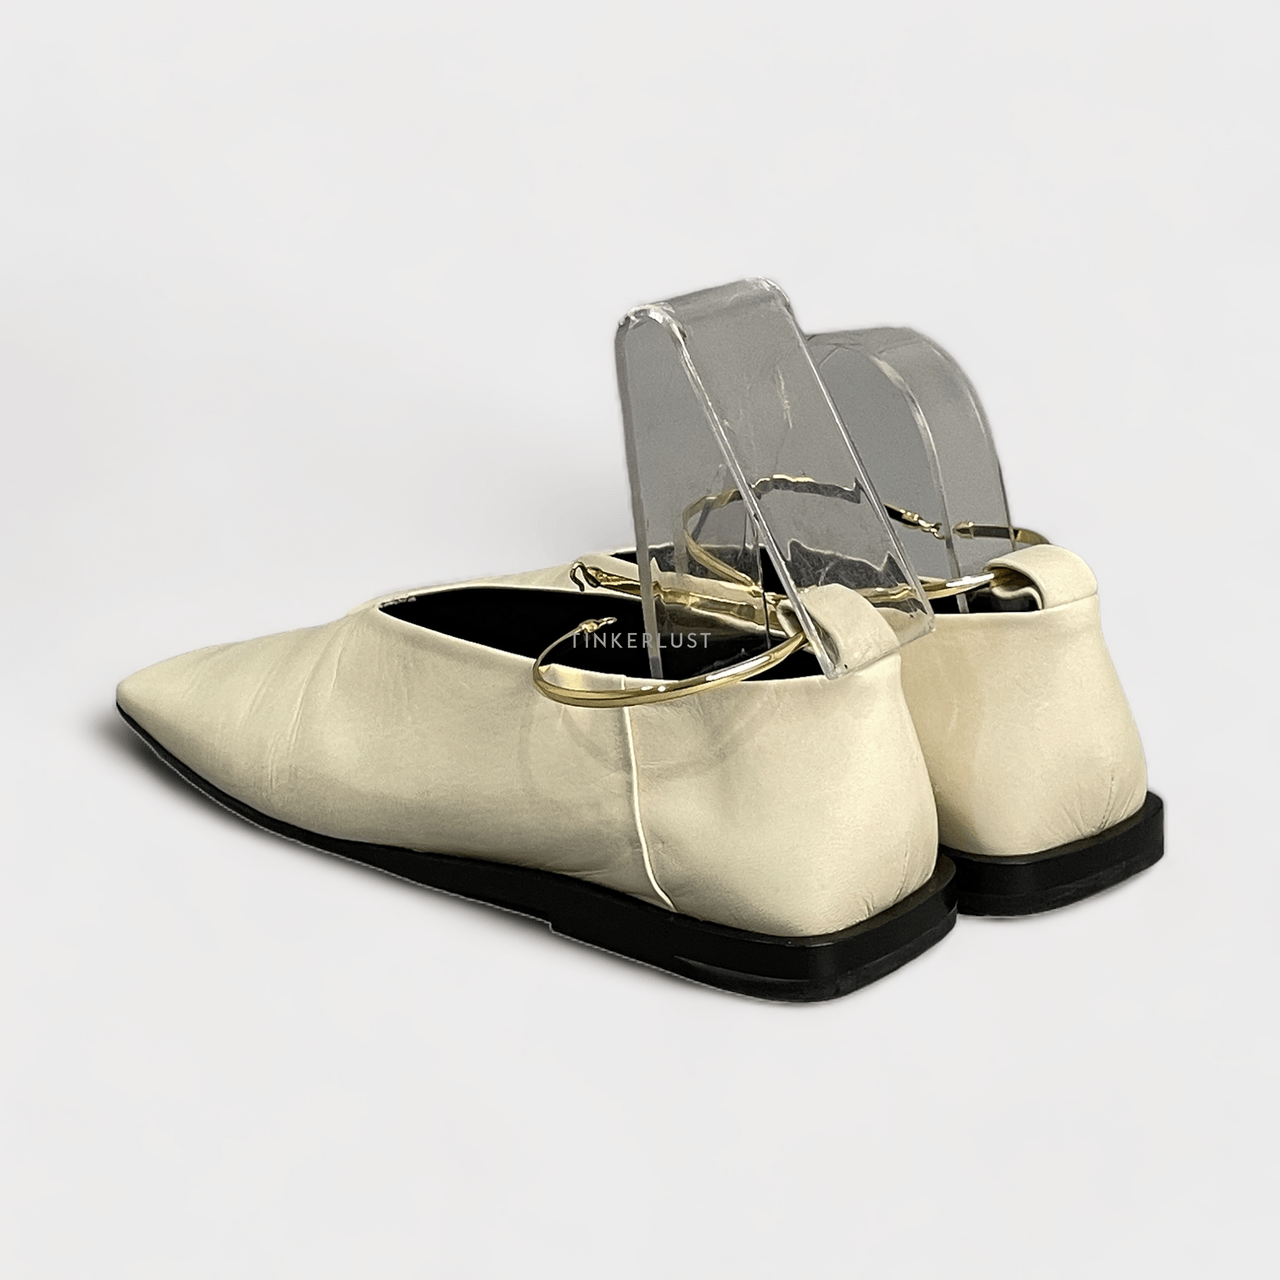 Jil Sander Embellished Glossed-leather Ivory Ballet Flats